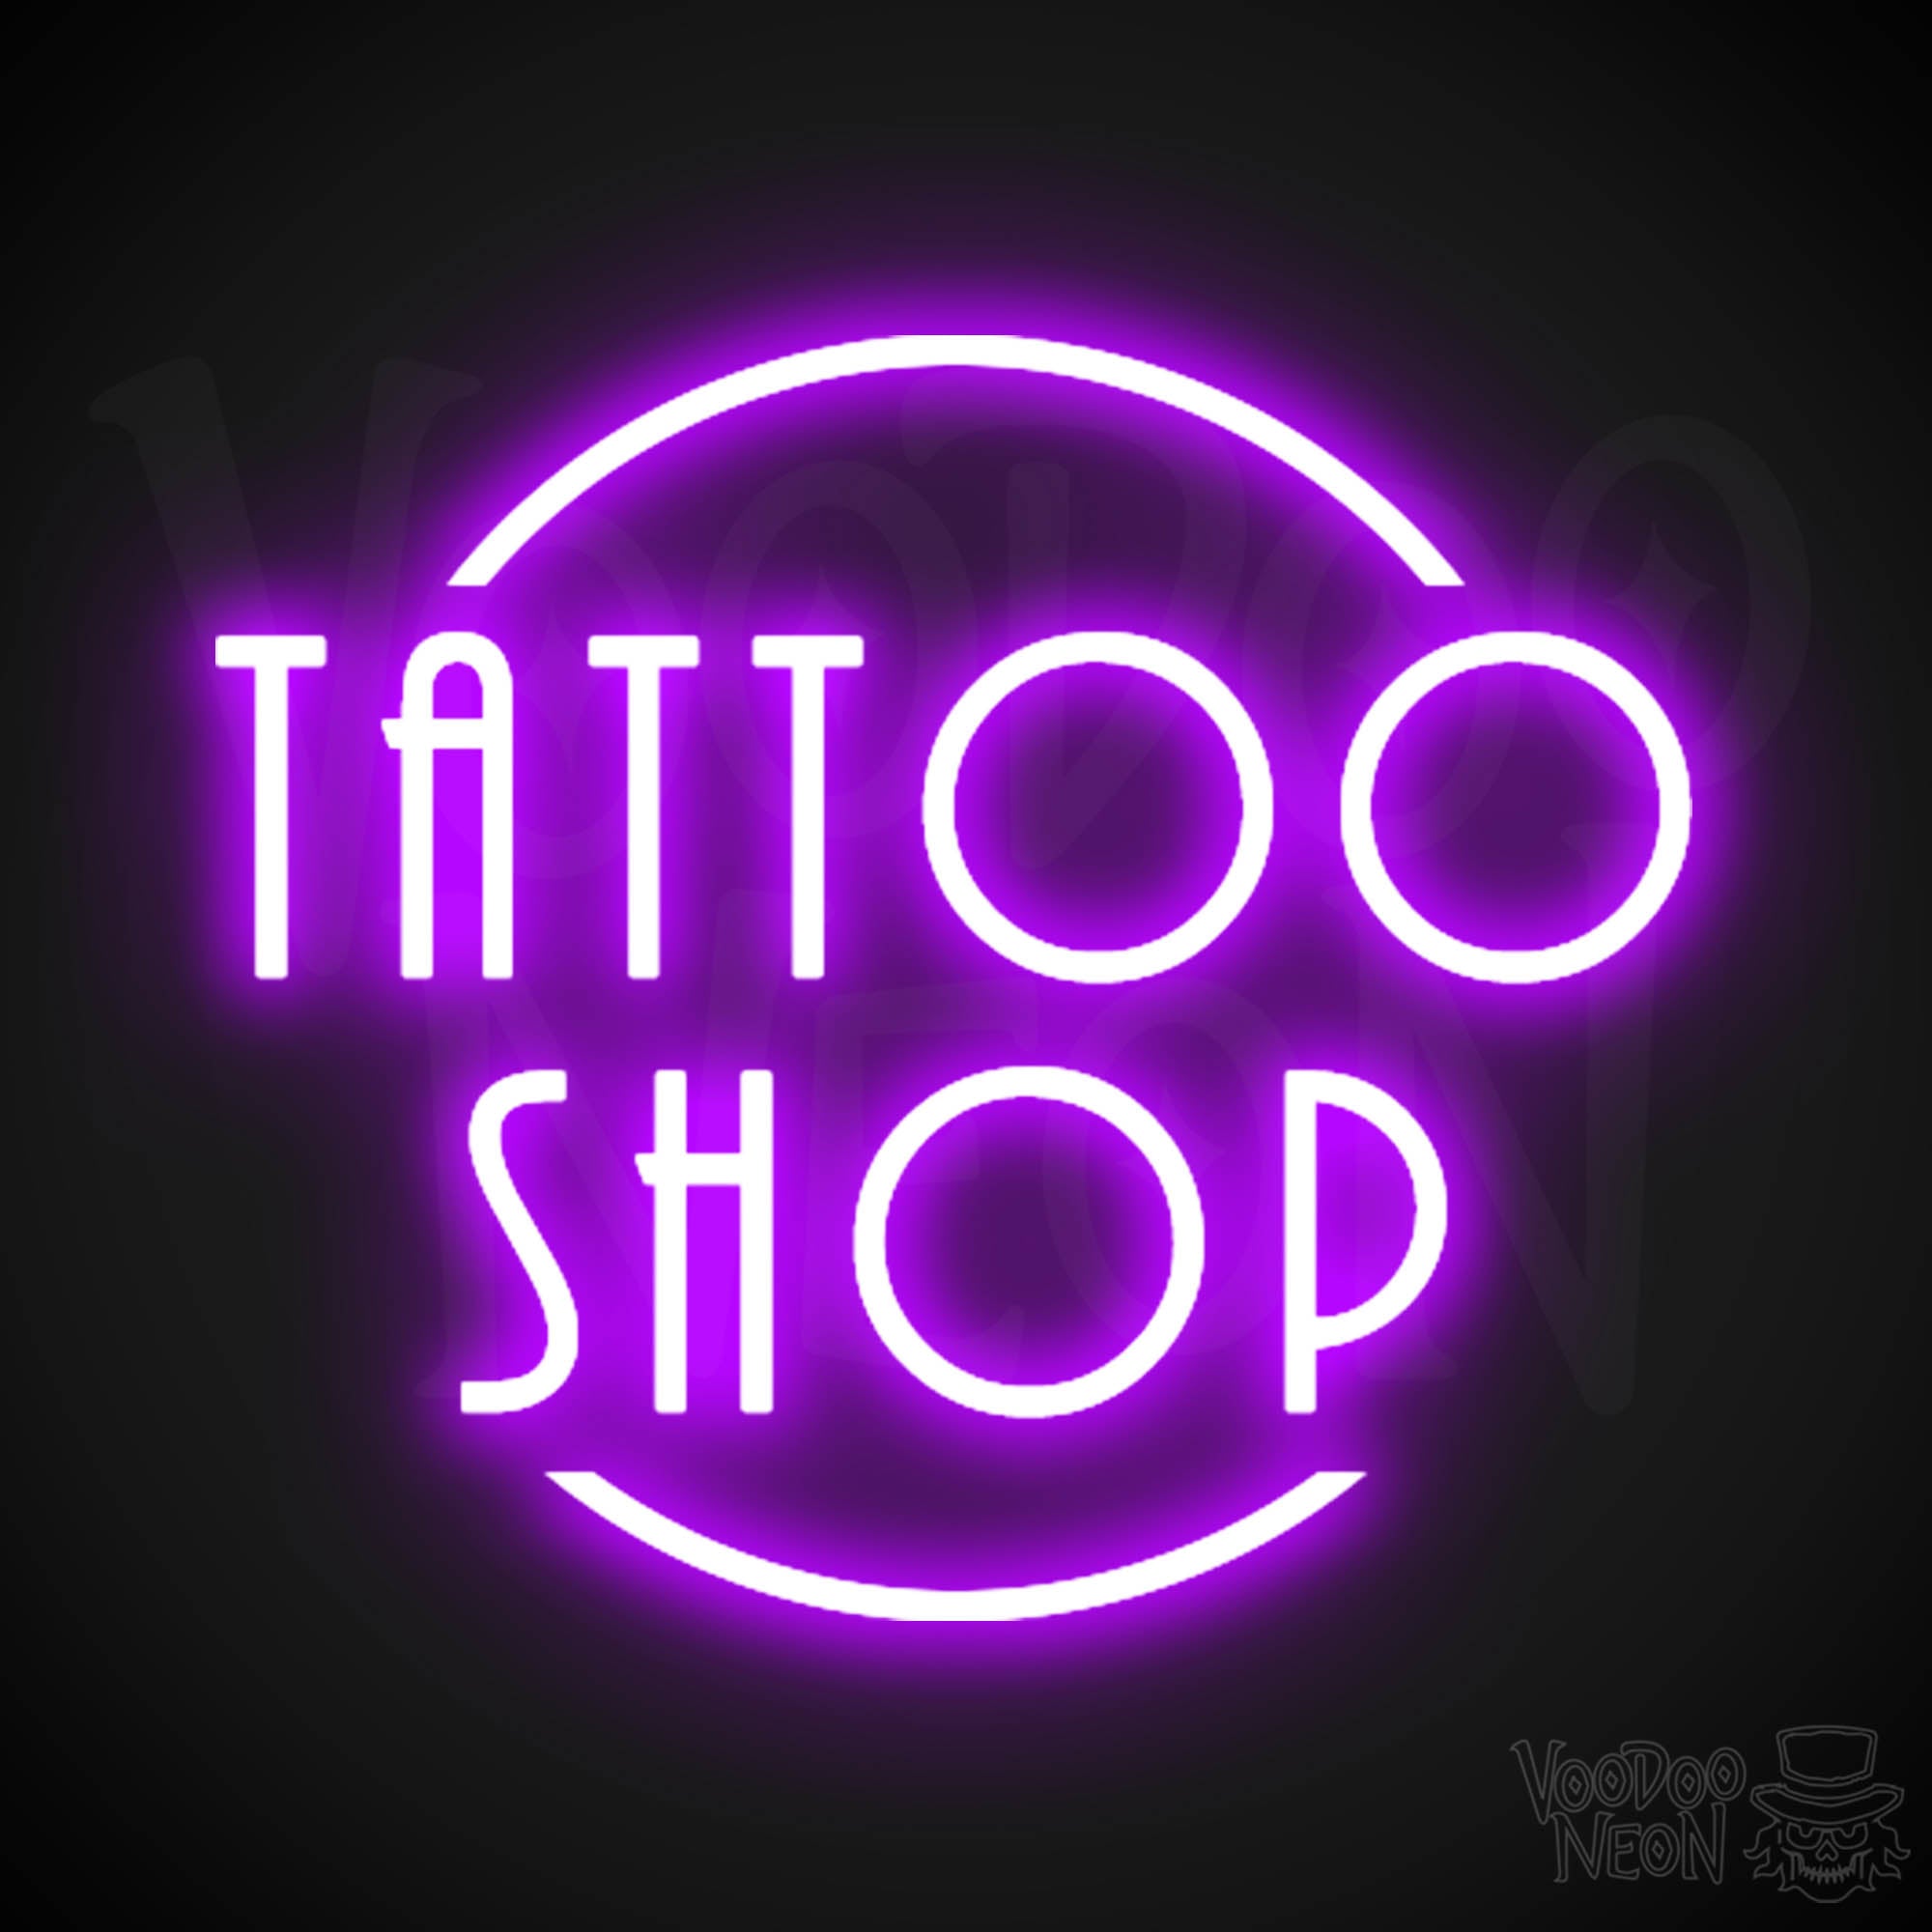 Tattoo Studio Metal Sign | eBay